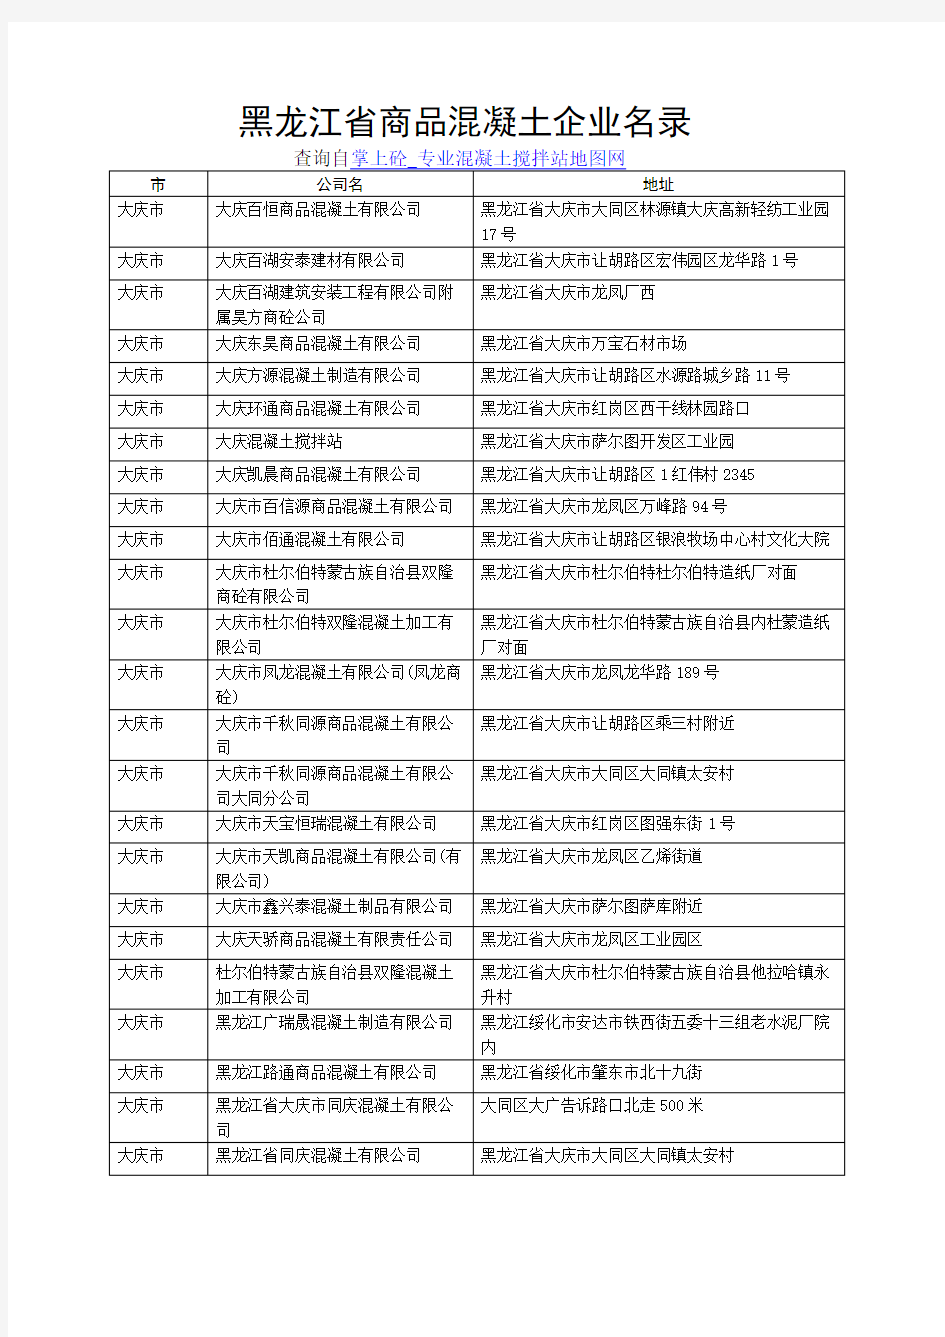 黑龙江省商品混凝土企业名录